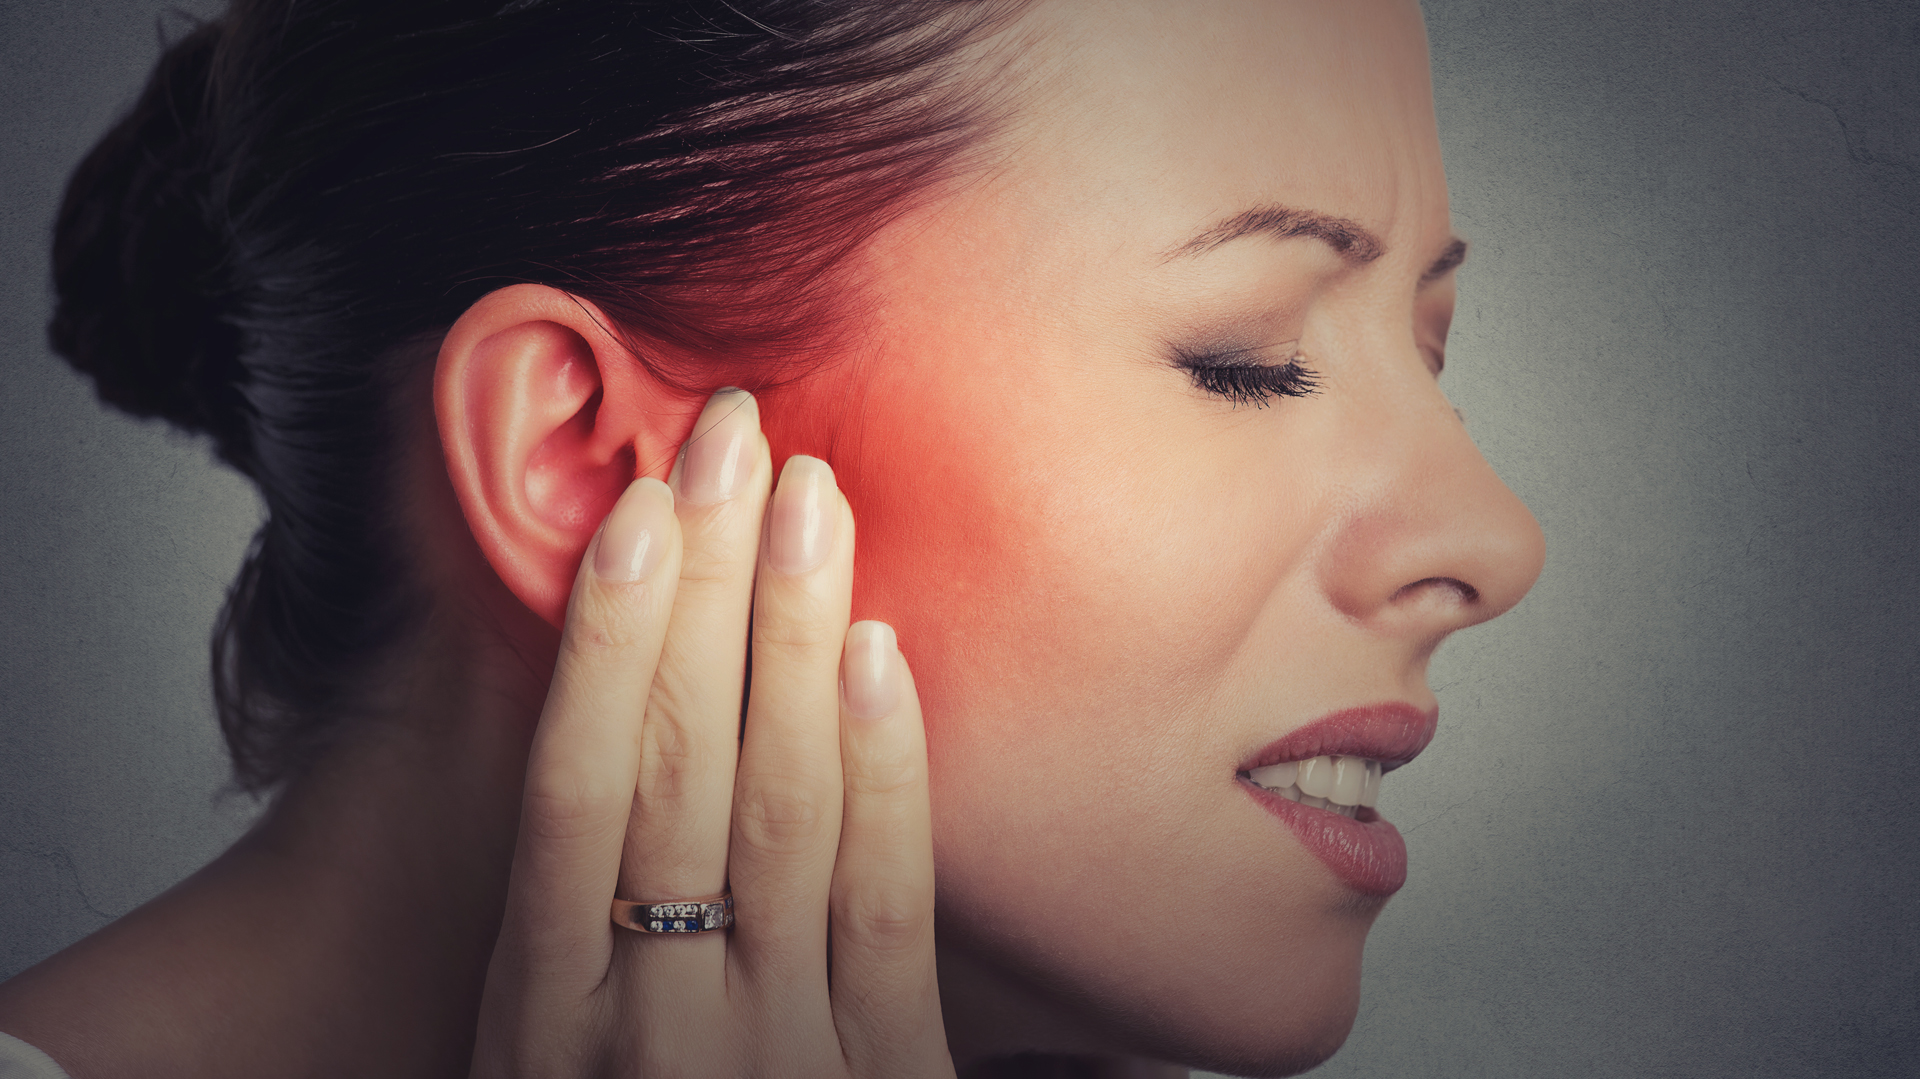 El tinnitus es un sonido o zumbido que perciben los pacientes sin que haya algún factor externo que lo provoque / (iStock)